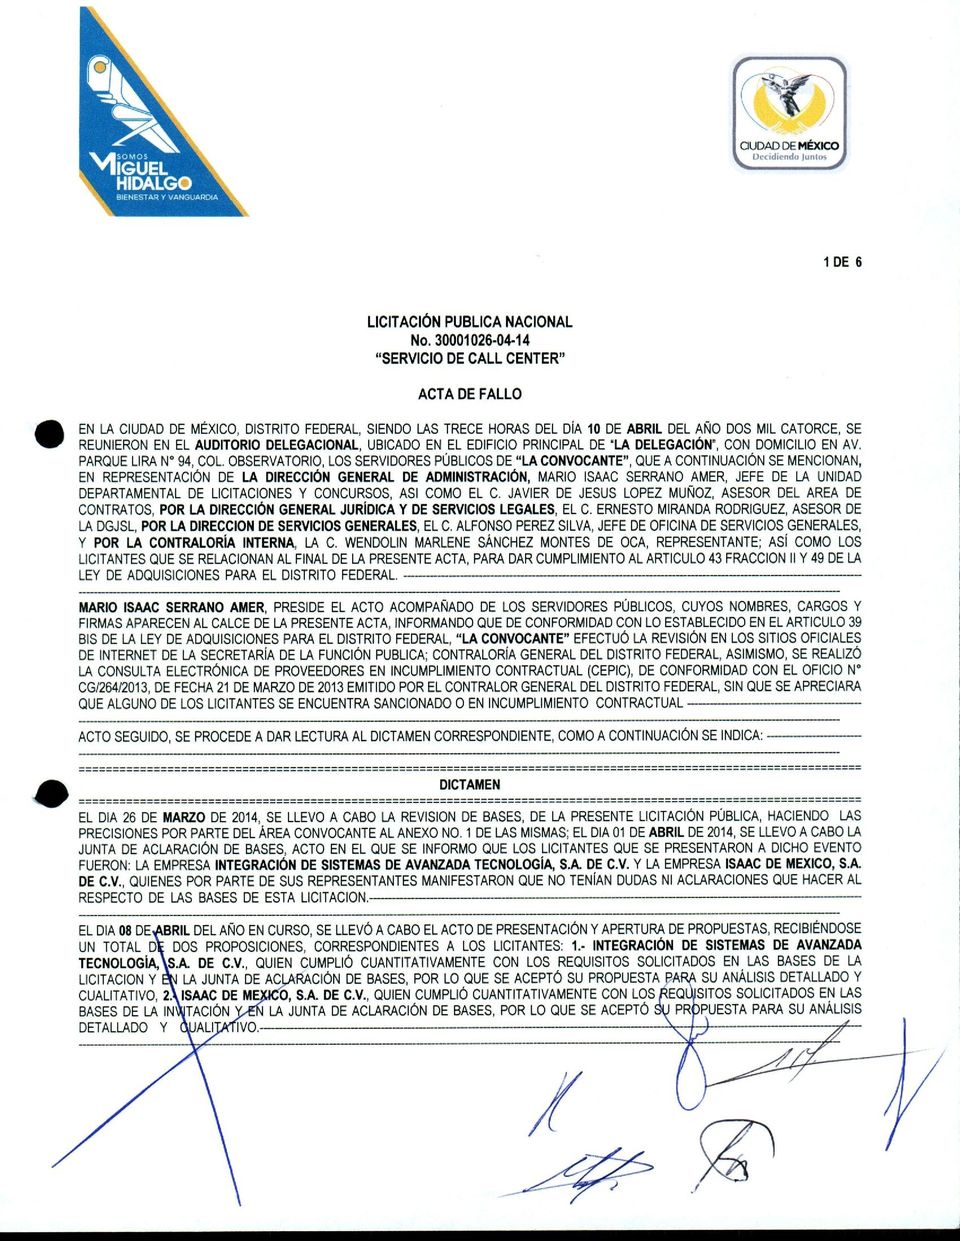 UBICADO EN EL EDIFICIO PRINCIPAL DE 'LA DELEGACION", CON DOMICILIO EN AV. PARQUE LIRA N 94, COL.